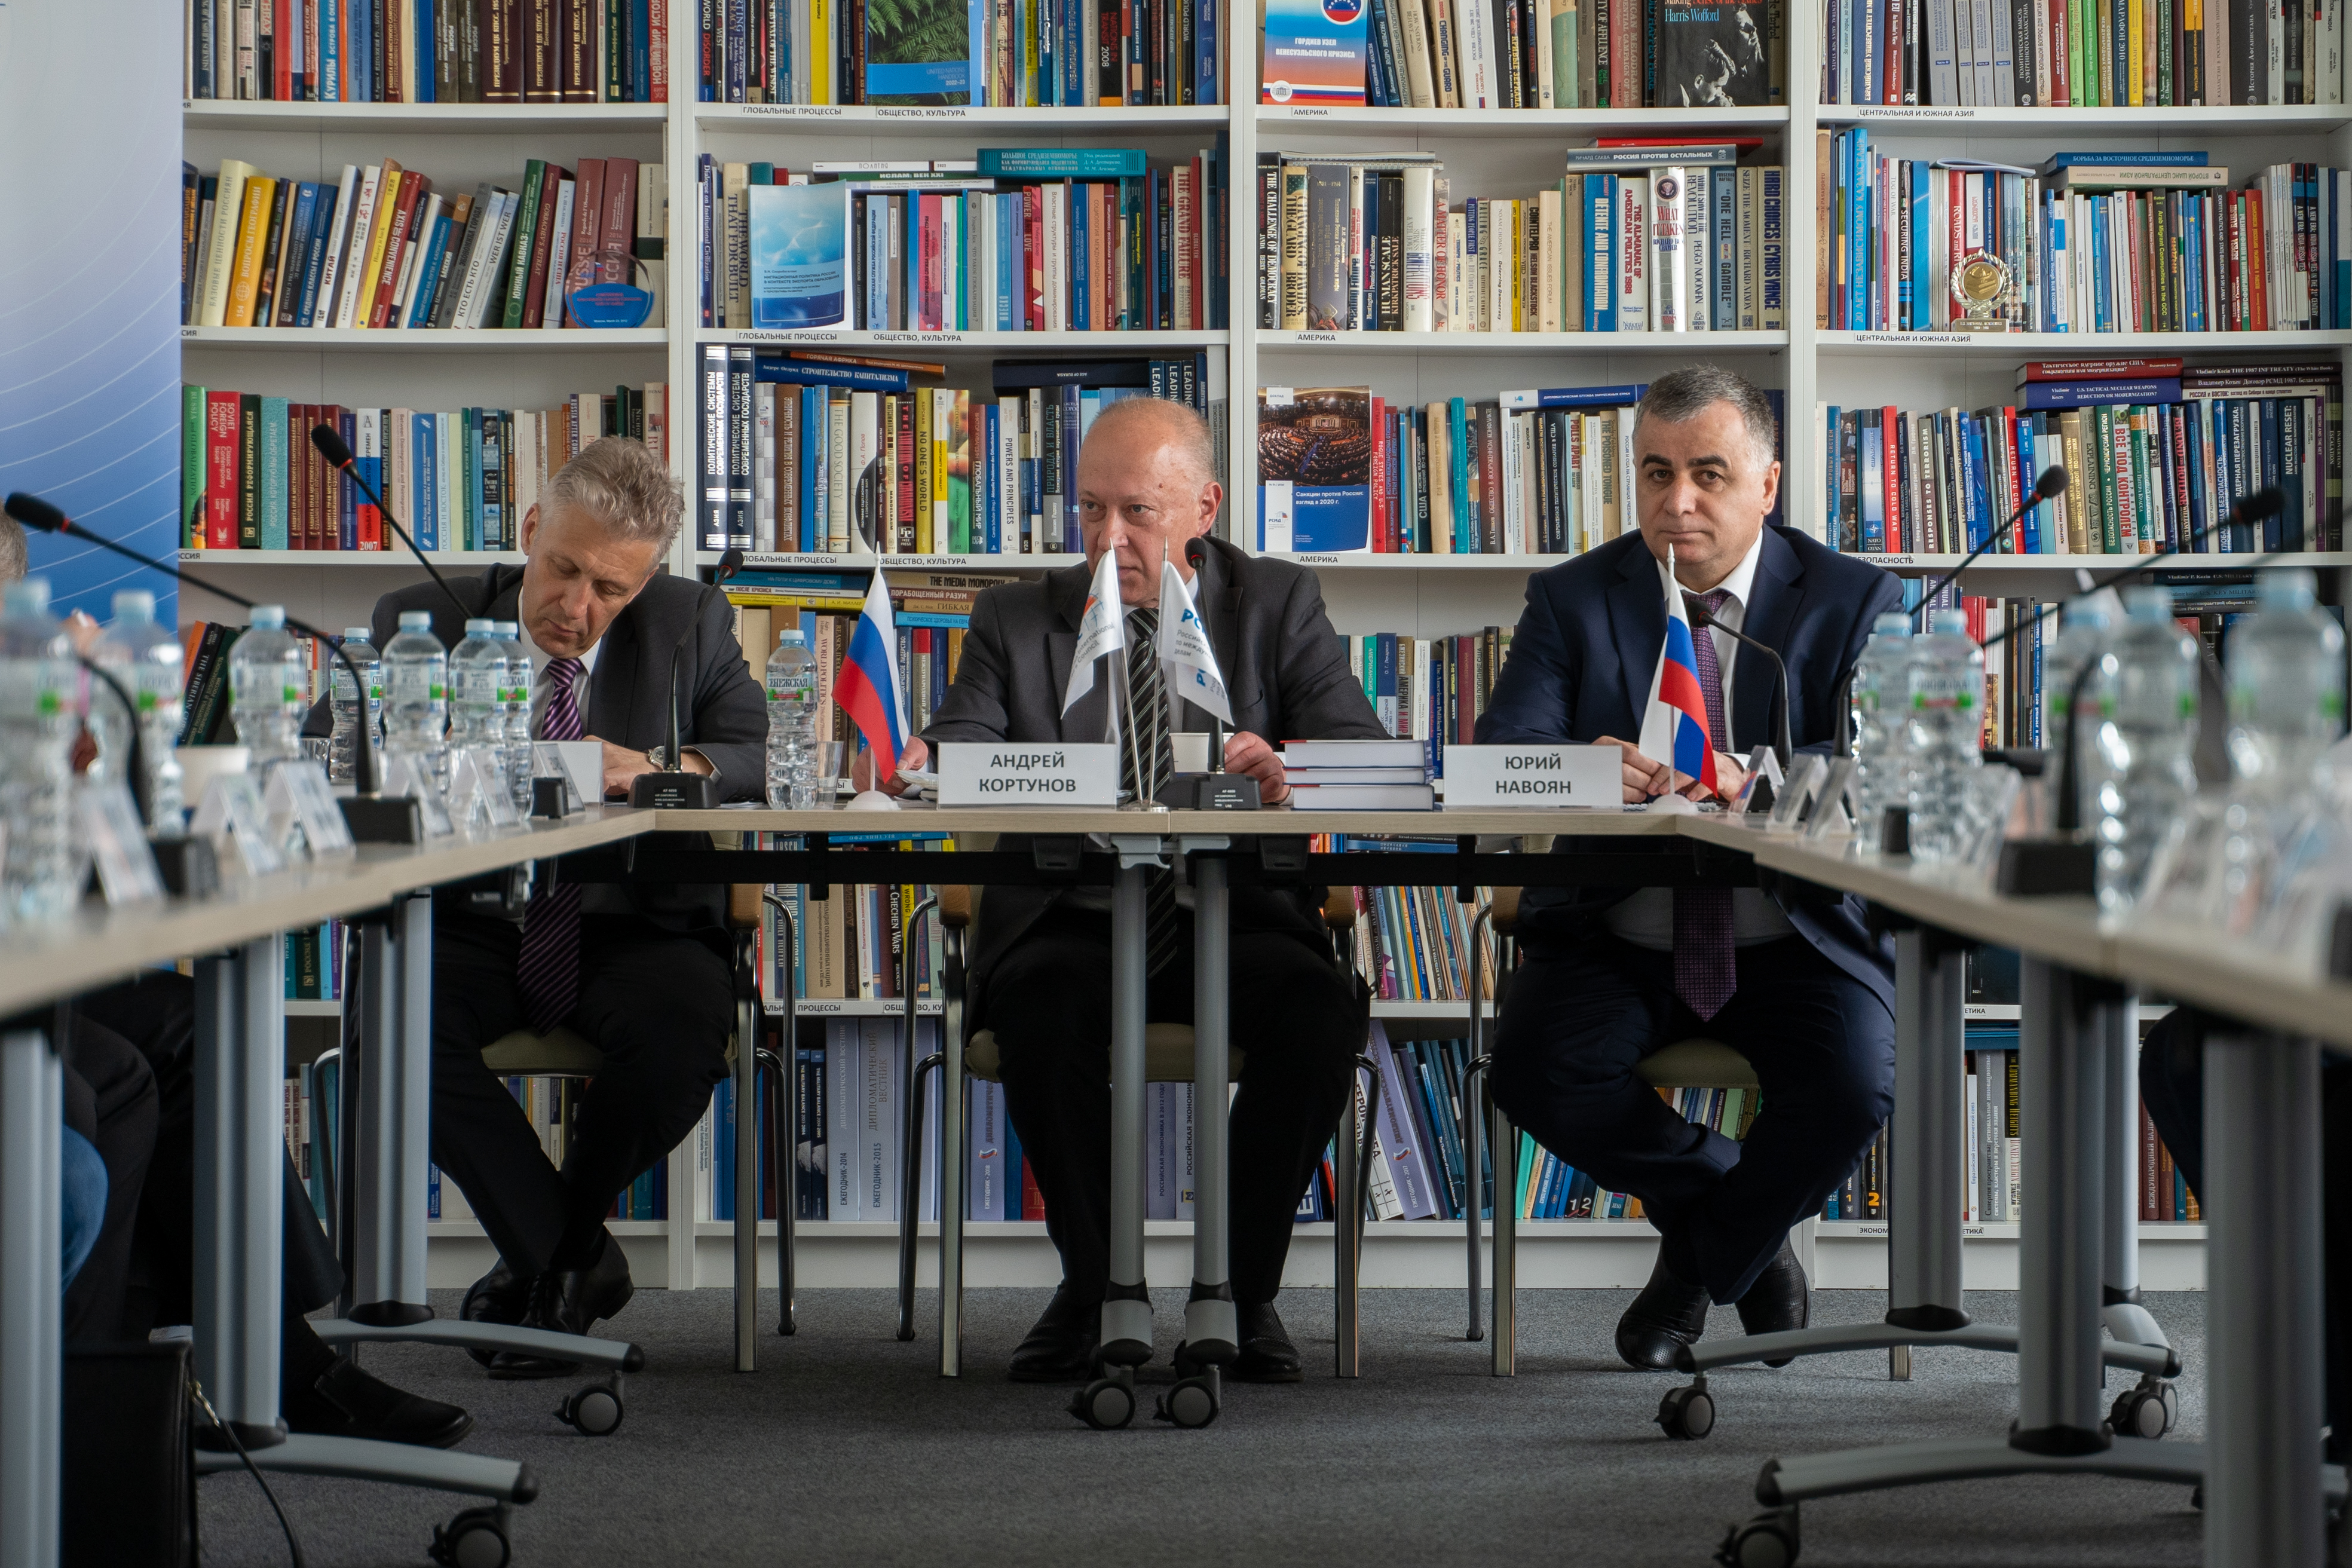 Юрий Навоян: три фундаментальные проблемы негативно влияют на взаимное восприятие и двусторонние отношения между Россией и Арменией 